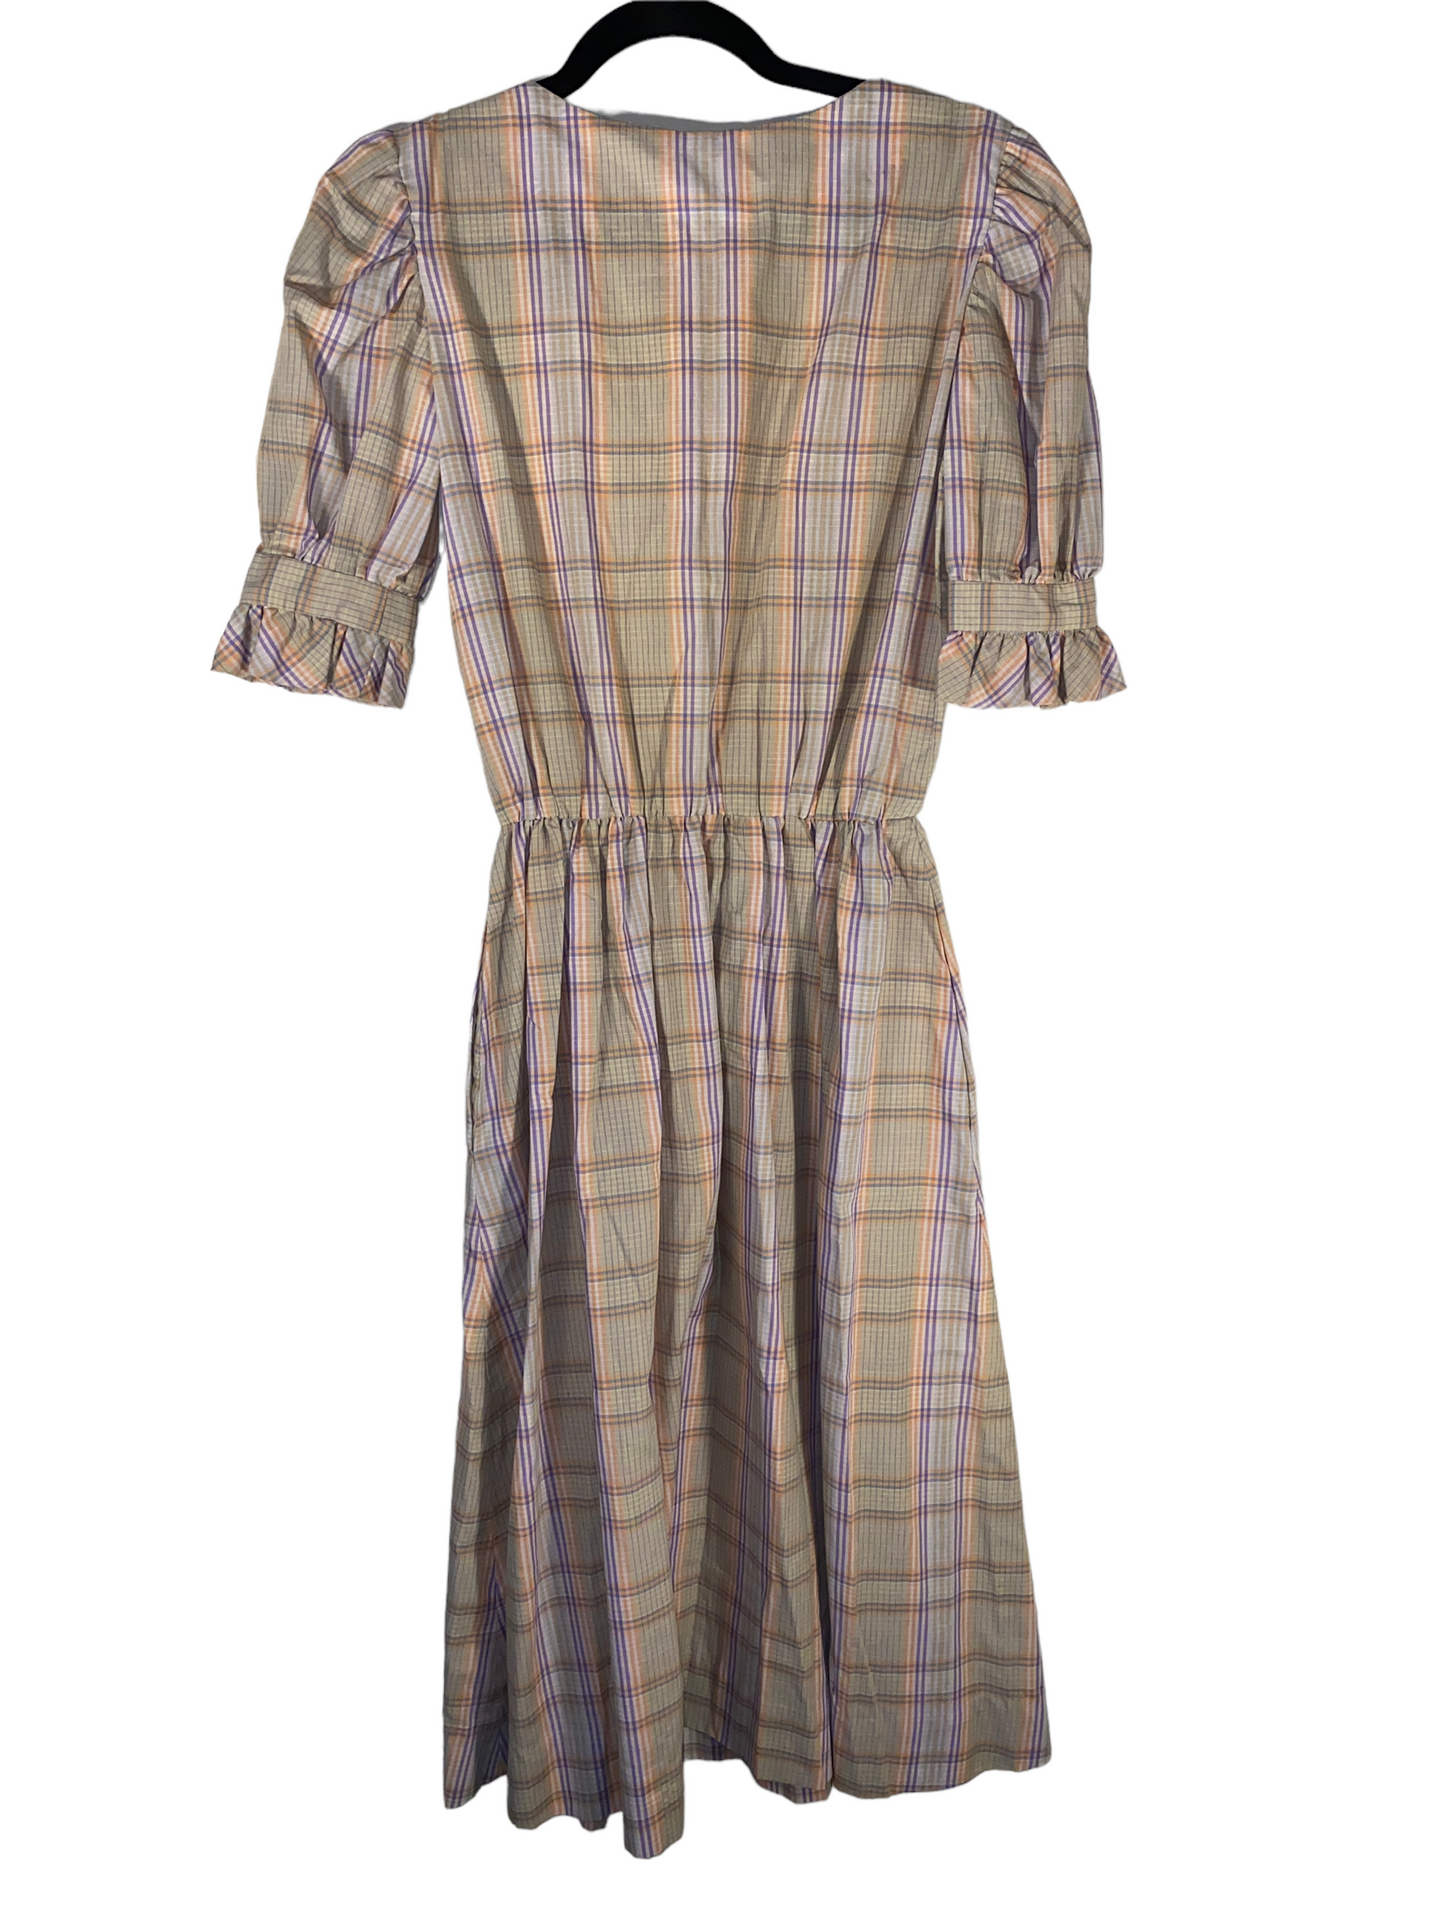 1970s Plaid Prairie Dress With Frill Trim